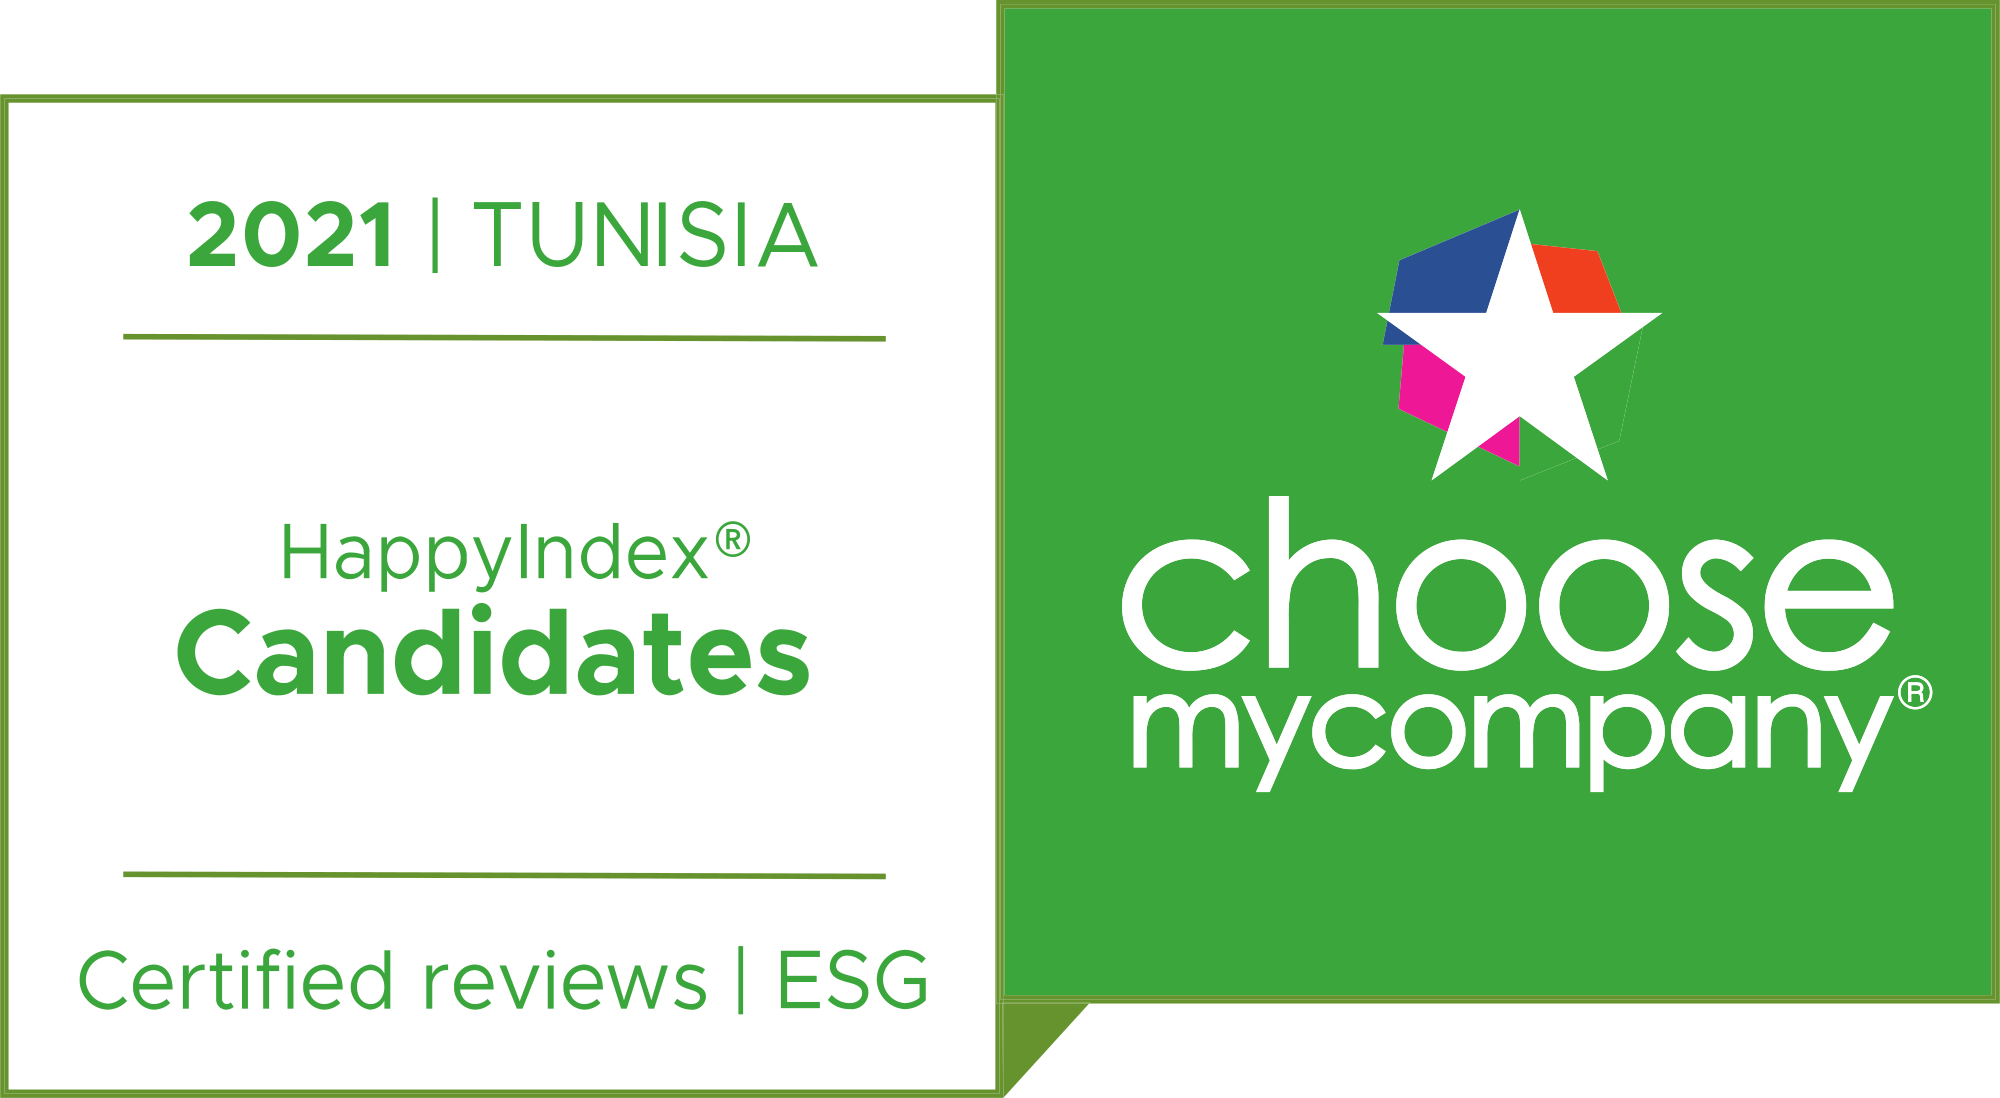 Logo HappyIndex®Candidates | Tunisia 2021